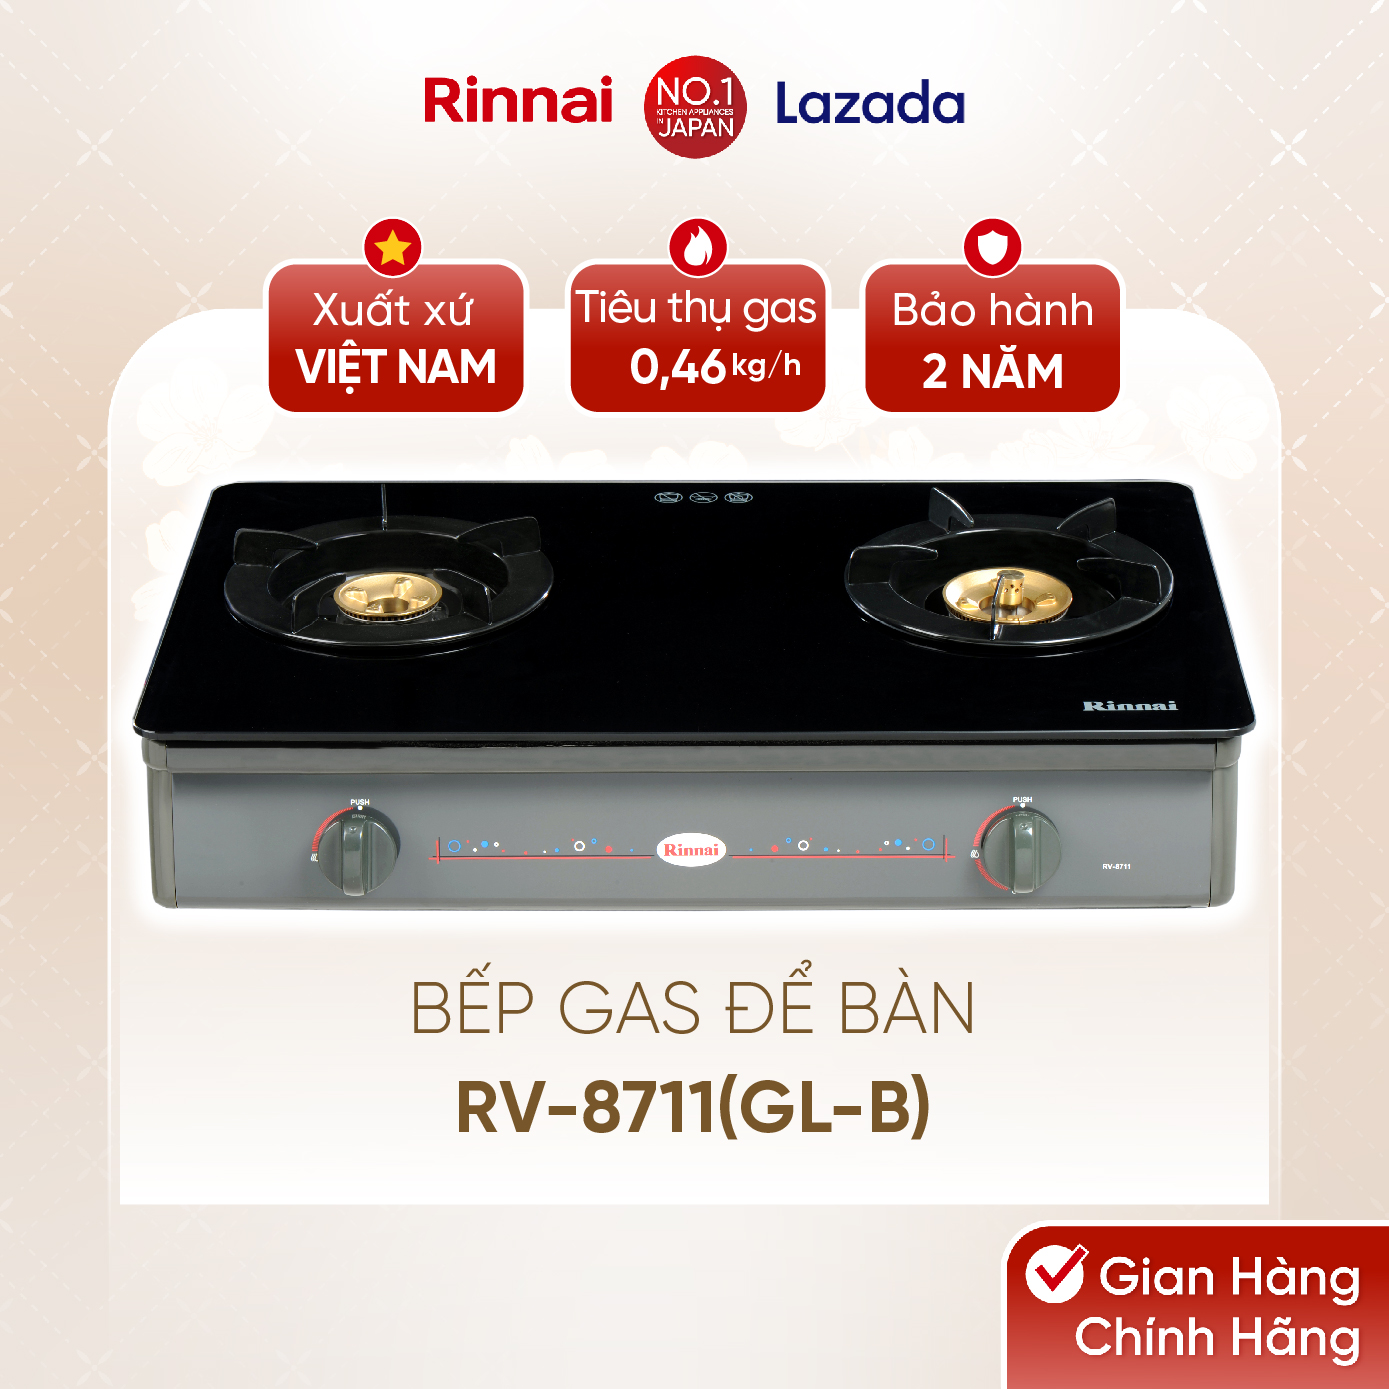 Bếp gas dương Rinnai RV-8711(GL-B) mặt bếp kính và kiềng bếp men - Hàng chính hãng.